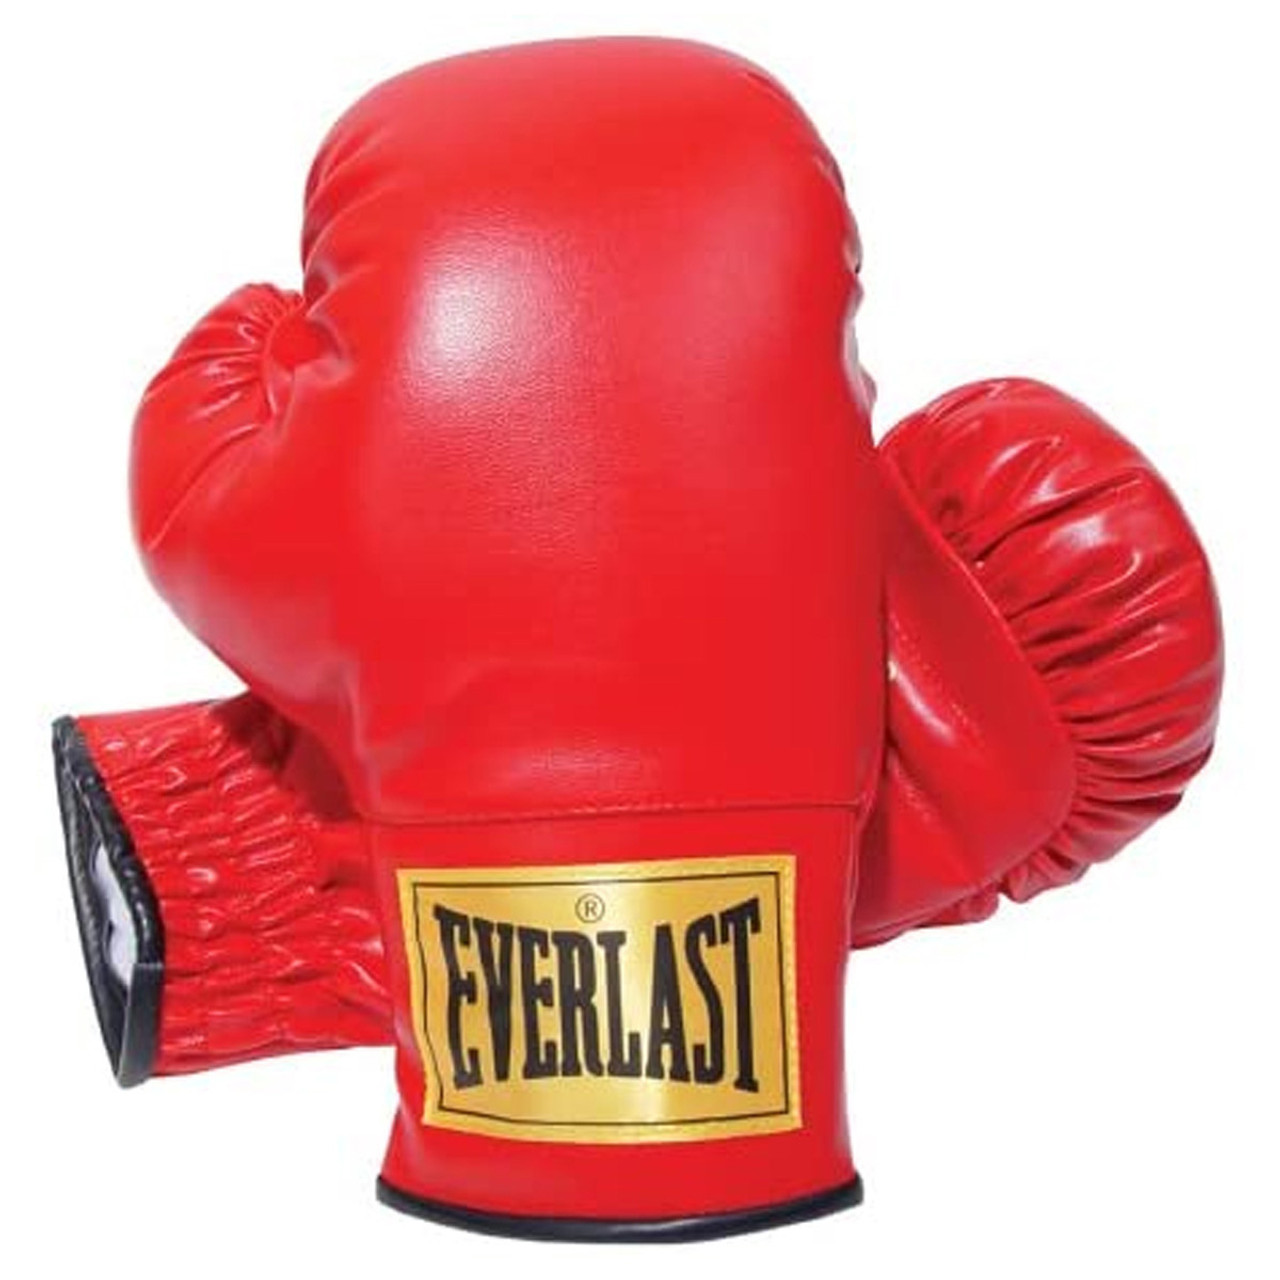 Everlast Boxing Gloves 14oz